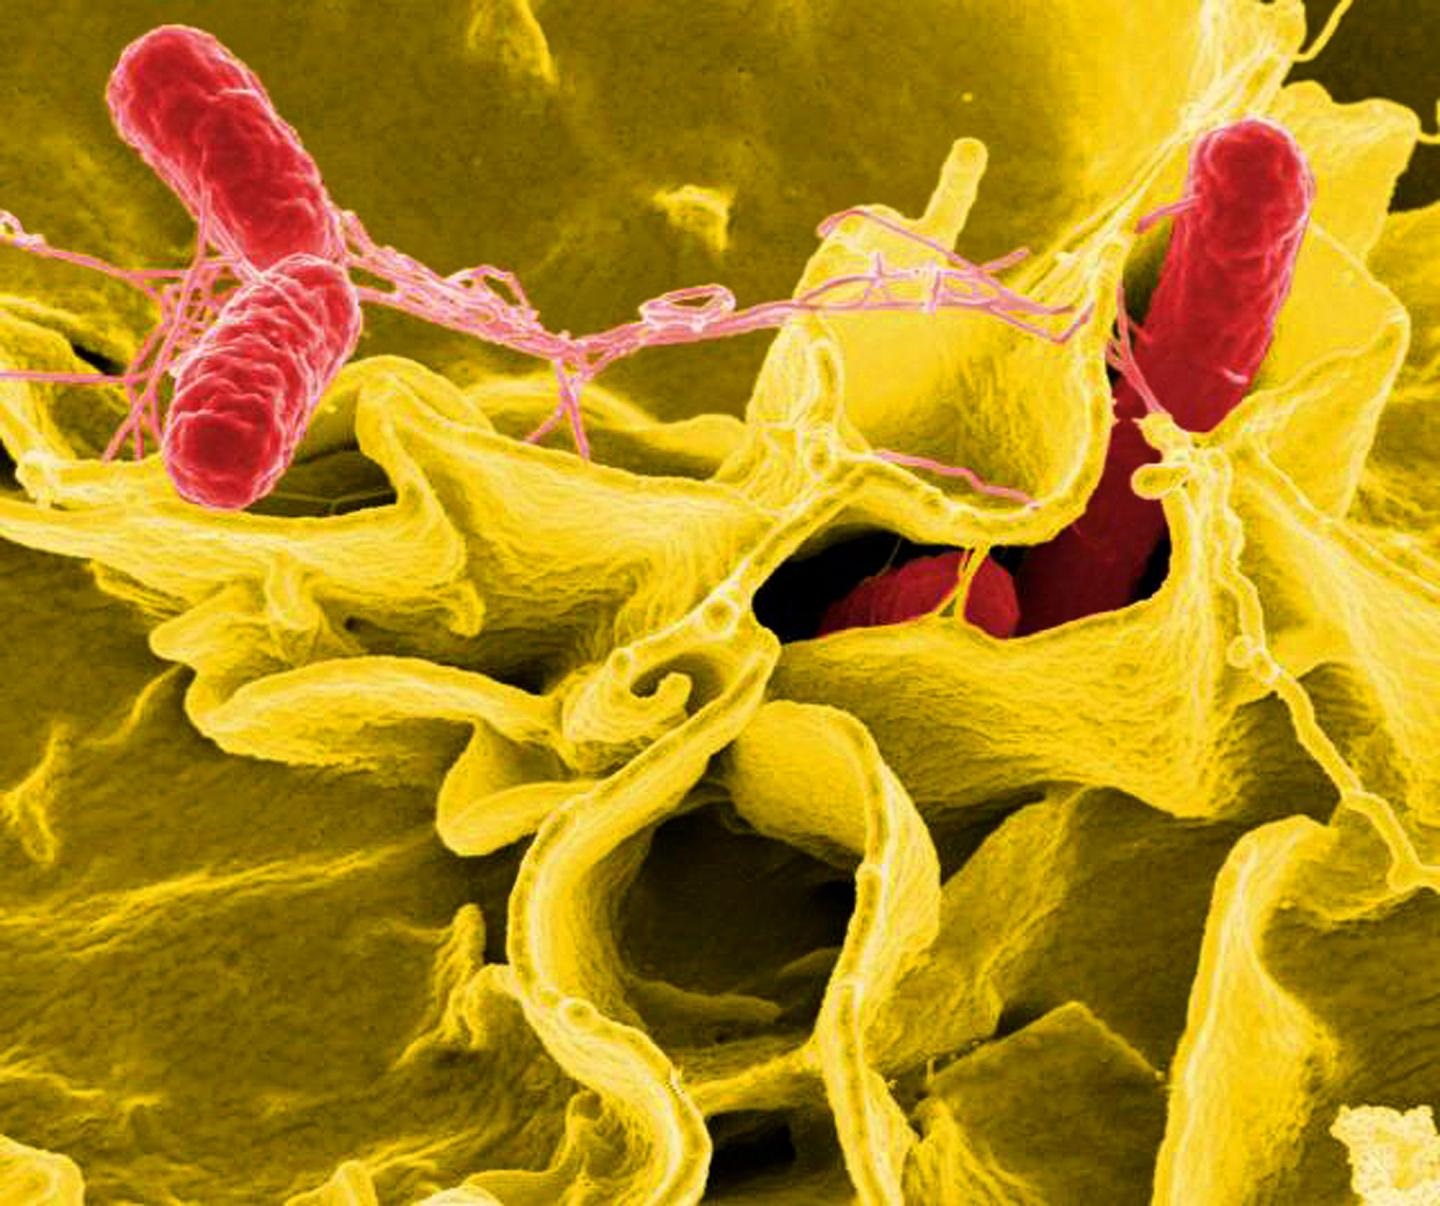 Claves sobre la salmonelosis, la segunda causa de gastroenteritis en España